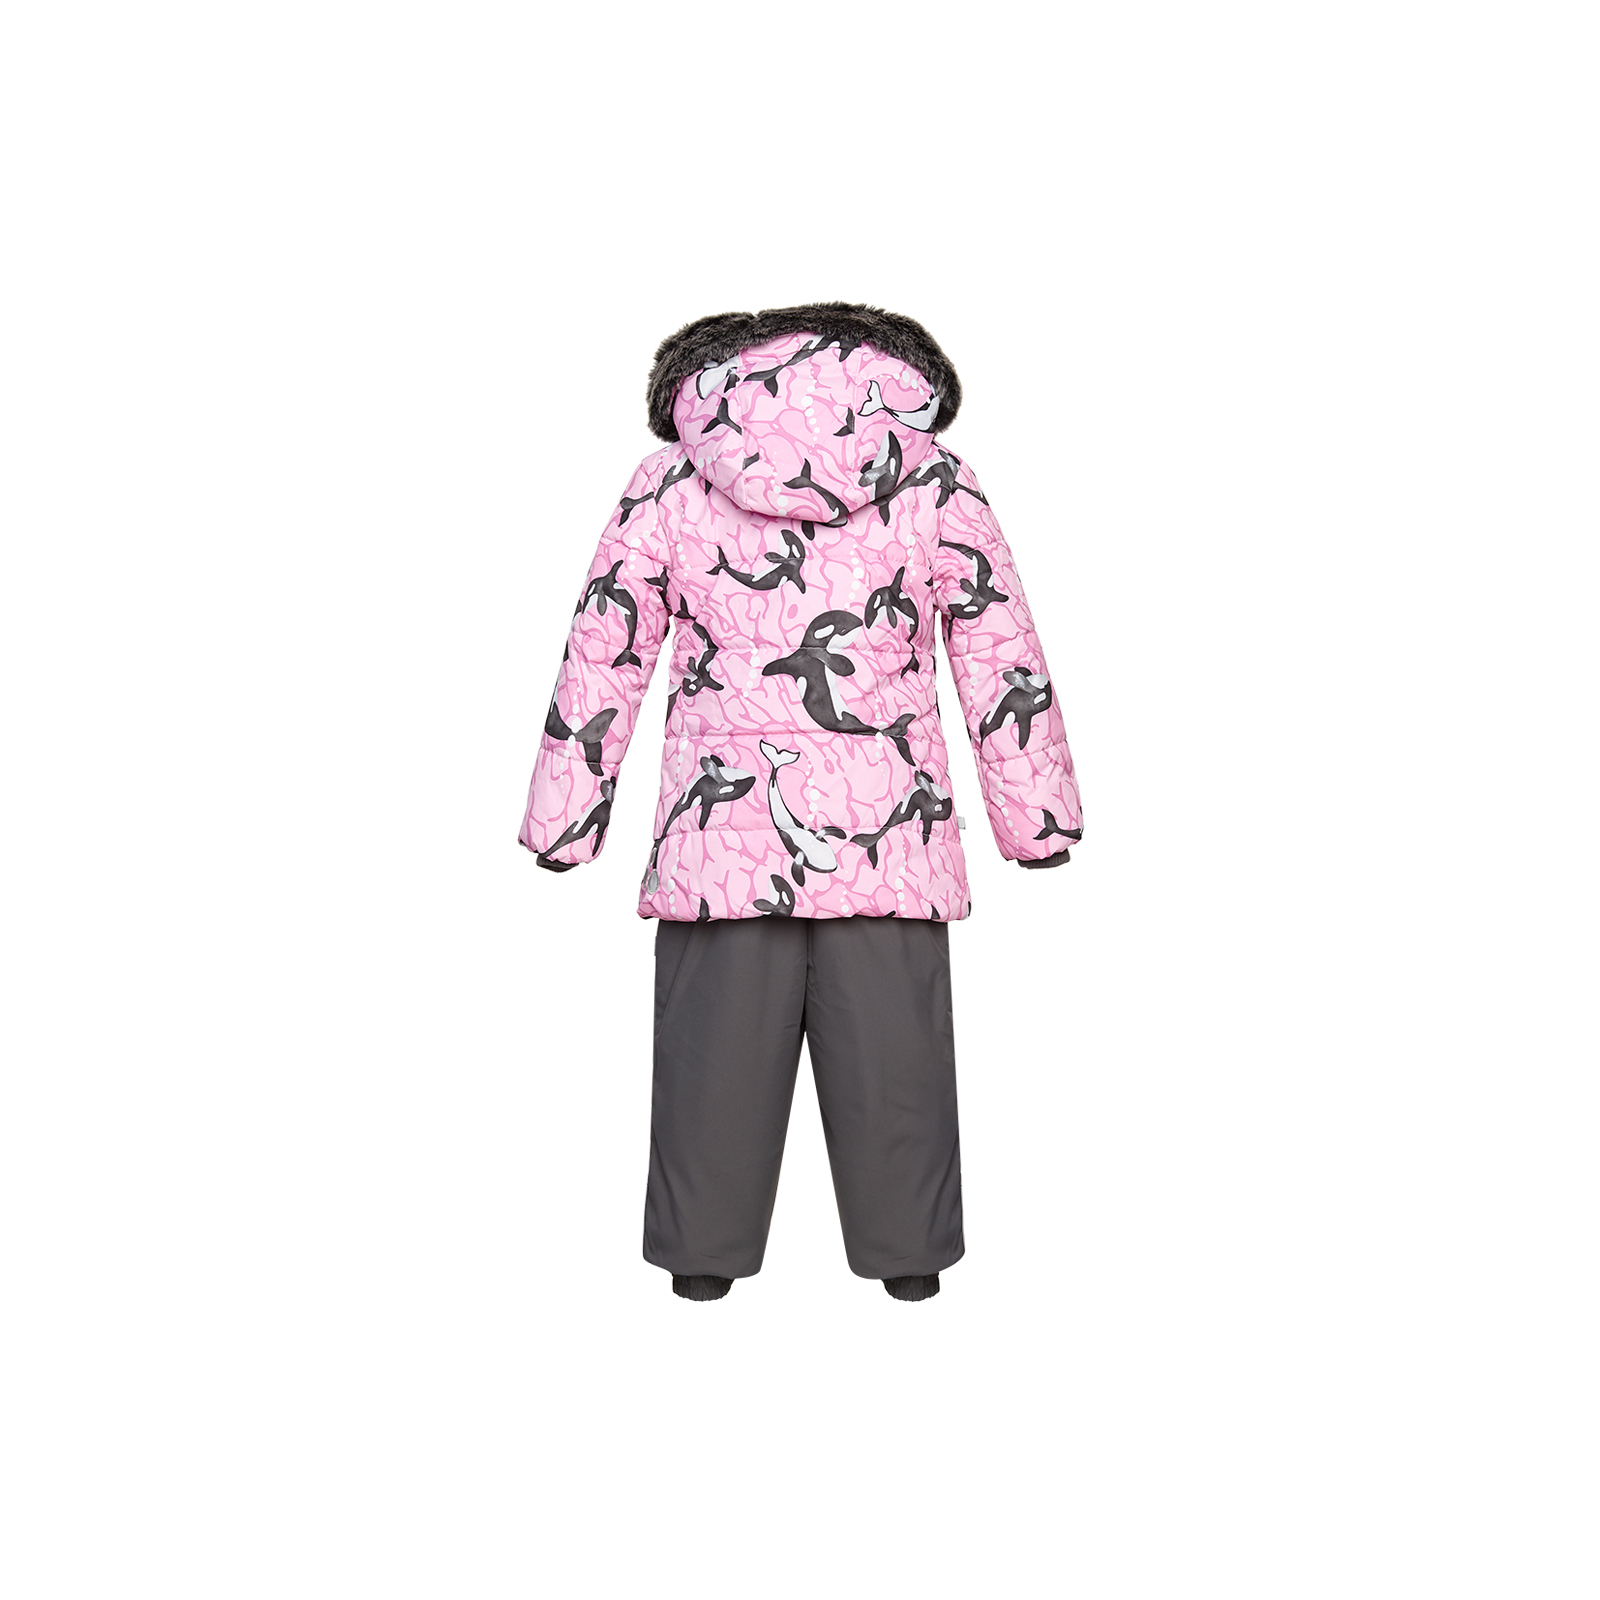 Комплект верхней одежды Huppa BELINDA 1 45090130 cветло-розовый с принтом/серый 80 (4741468977331) изображение 2